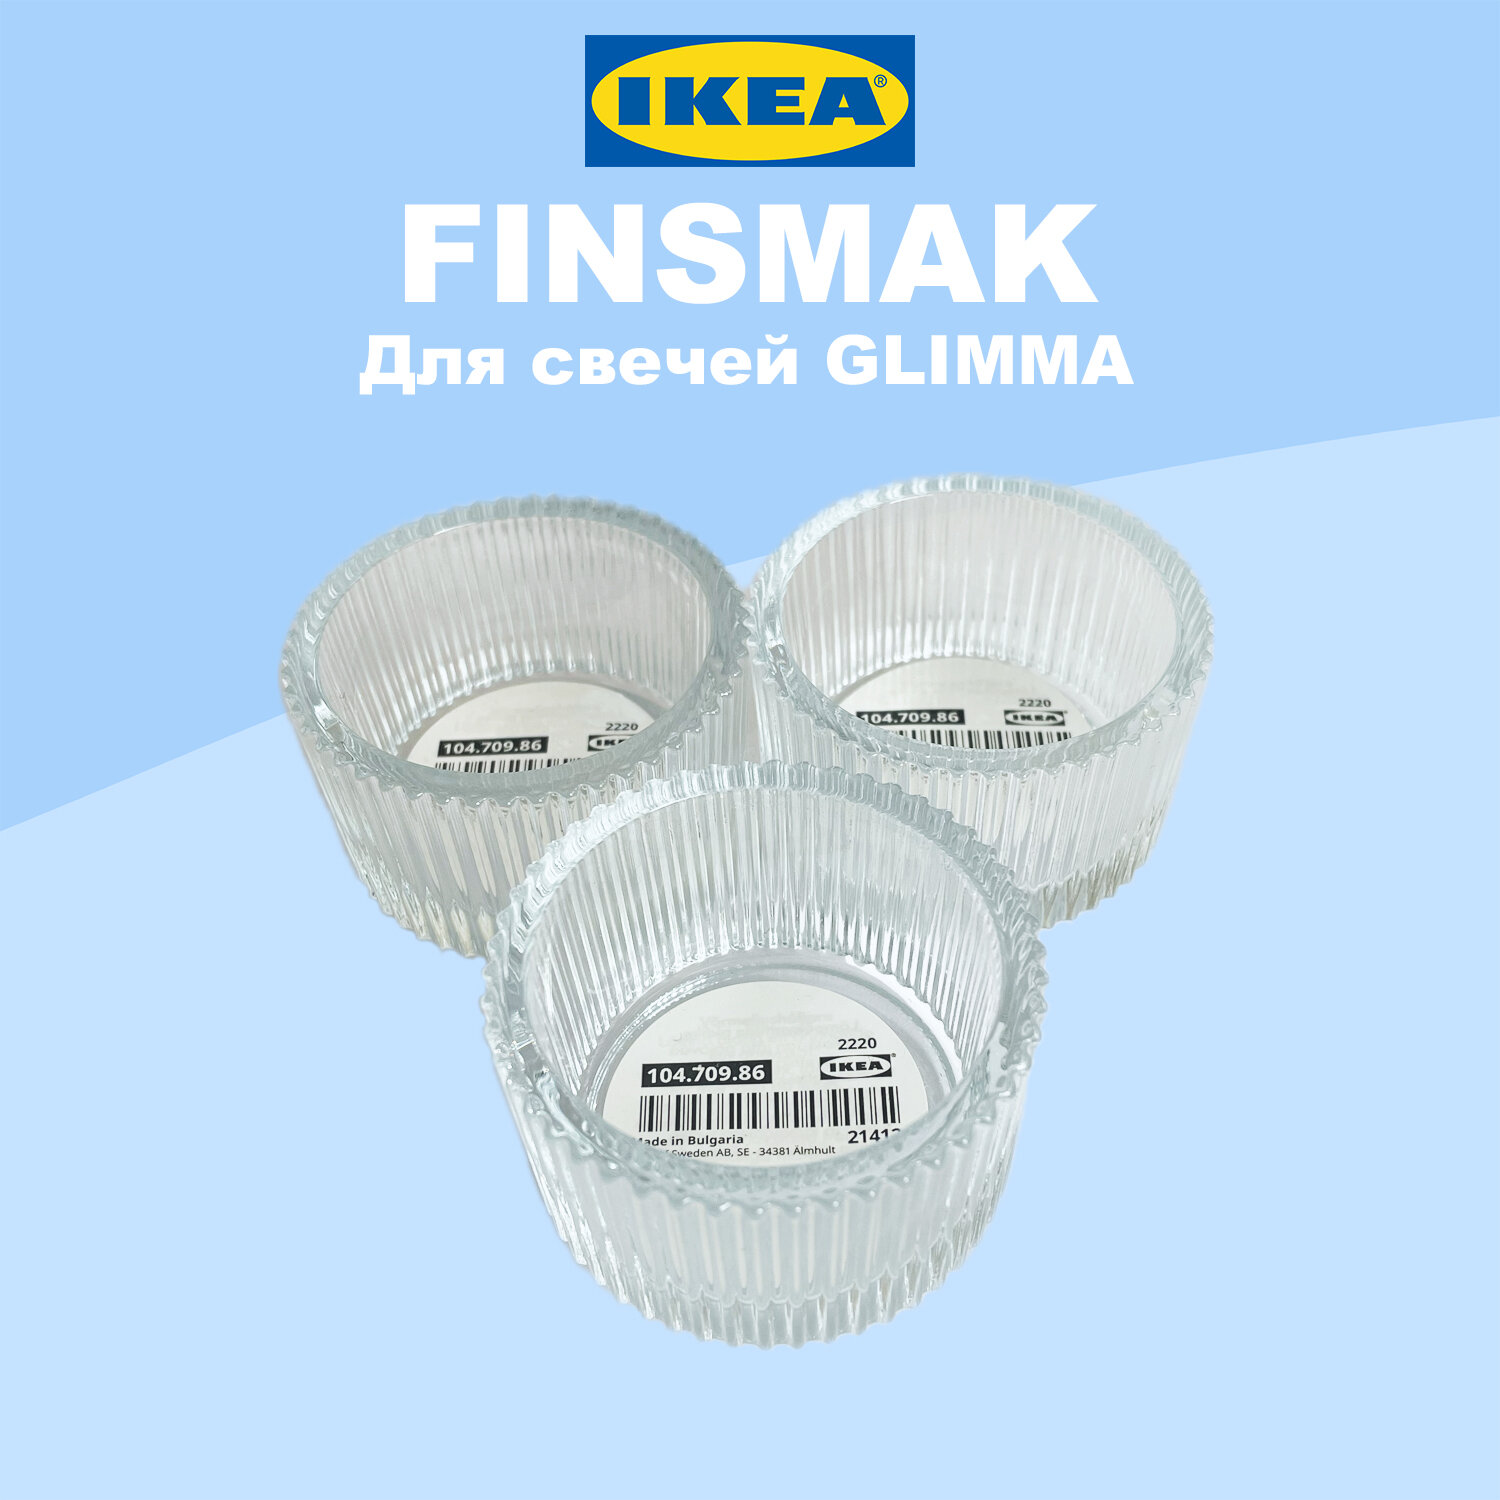 Подсвечники IKEA FINSMAK / икеа финсмак для свечей GLIMMA, 3шт